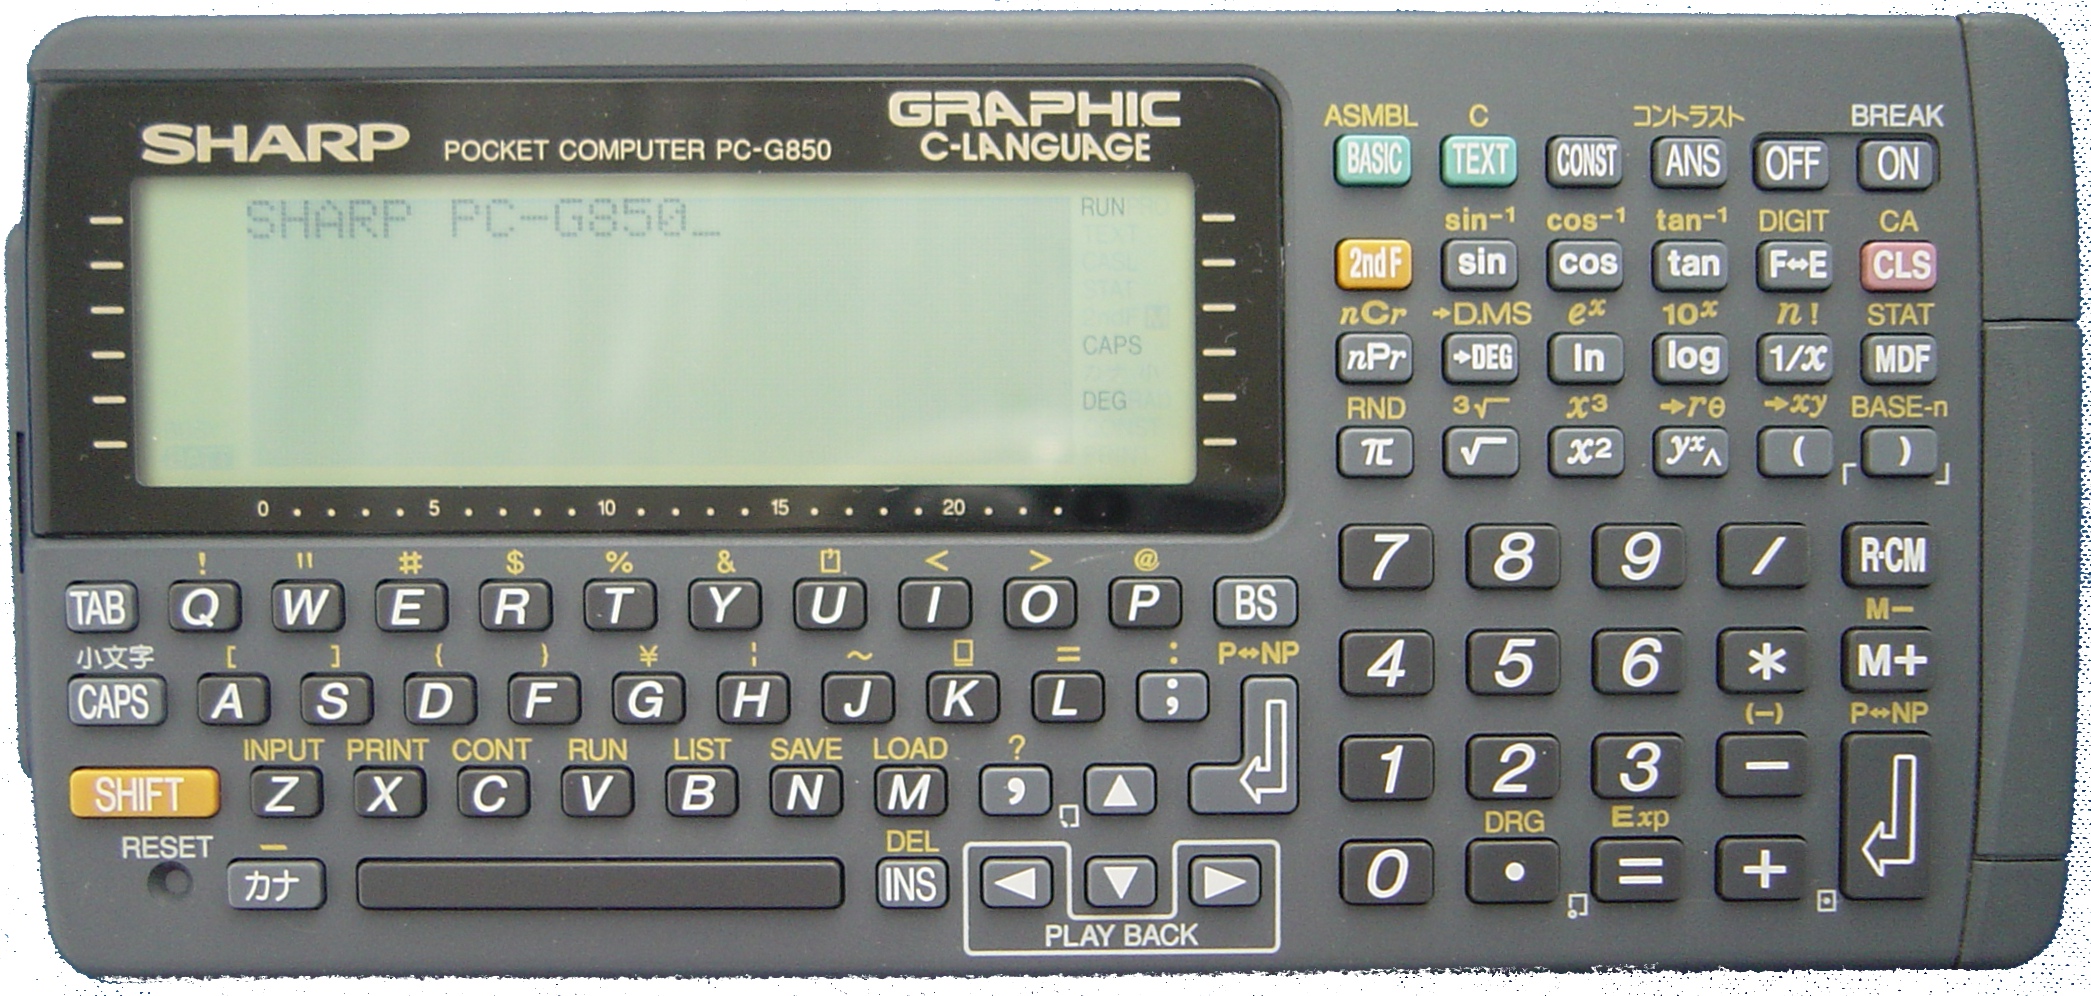 SHARP　ポケットコンピューター　PC-G850VS使用によるスレ等はあります